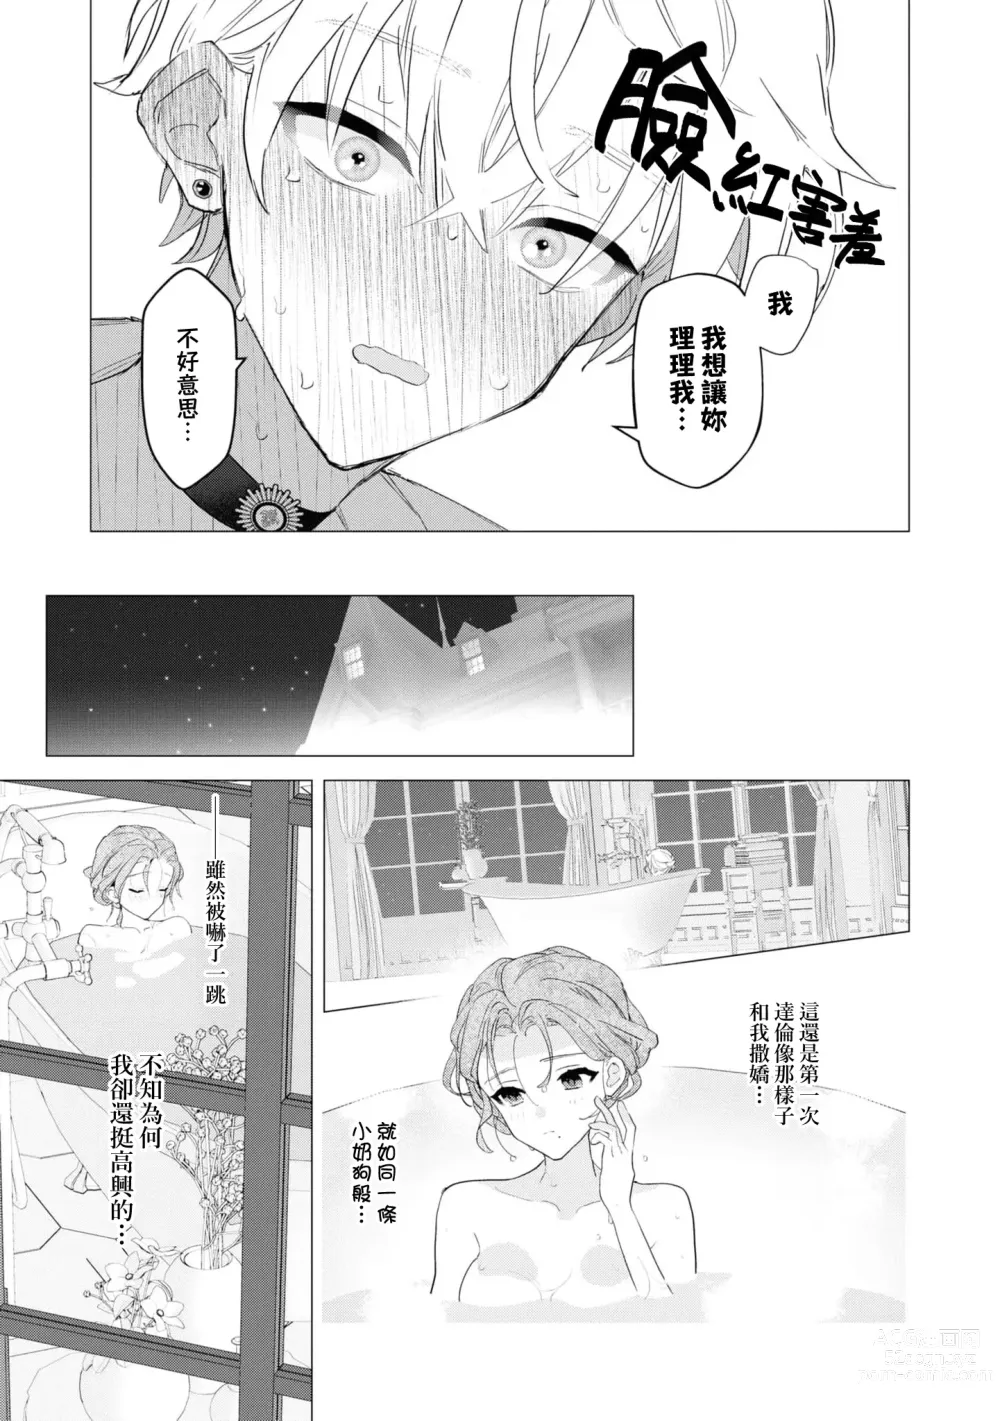 Page 12 of manga 年下竹马的甜蜜低吼～不容抗拒的求爱～